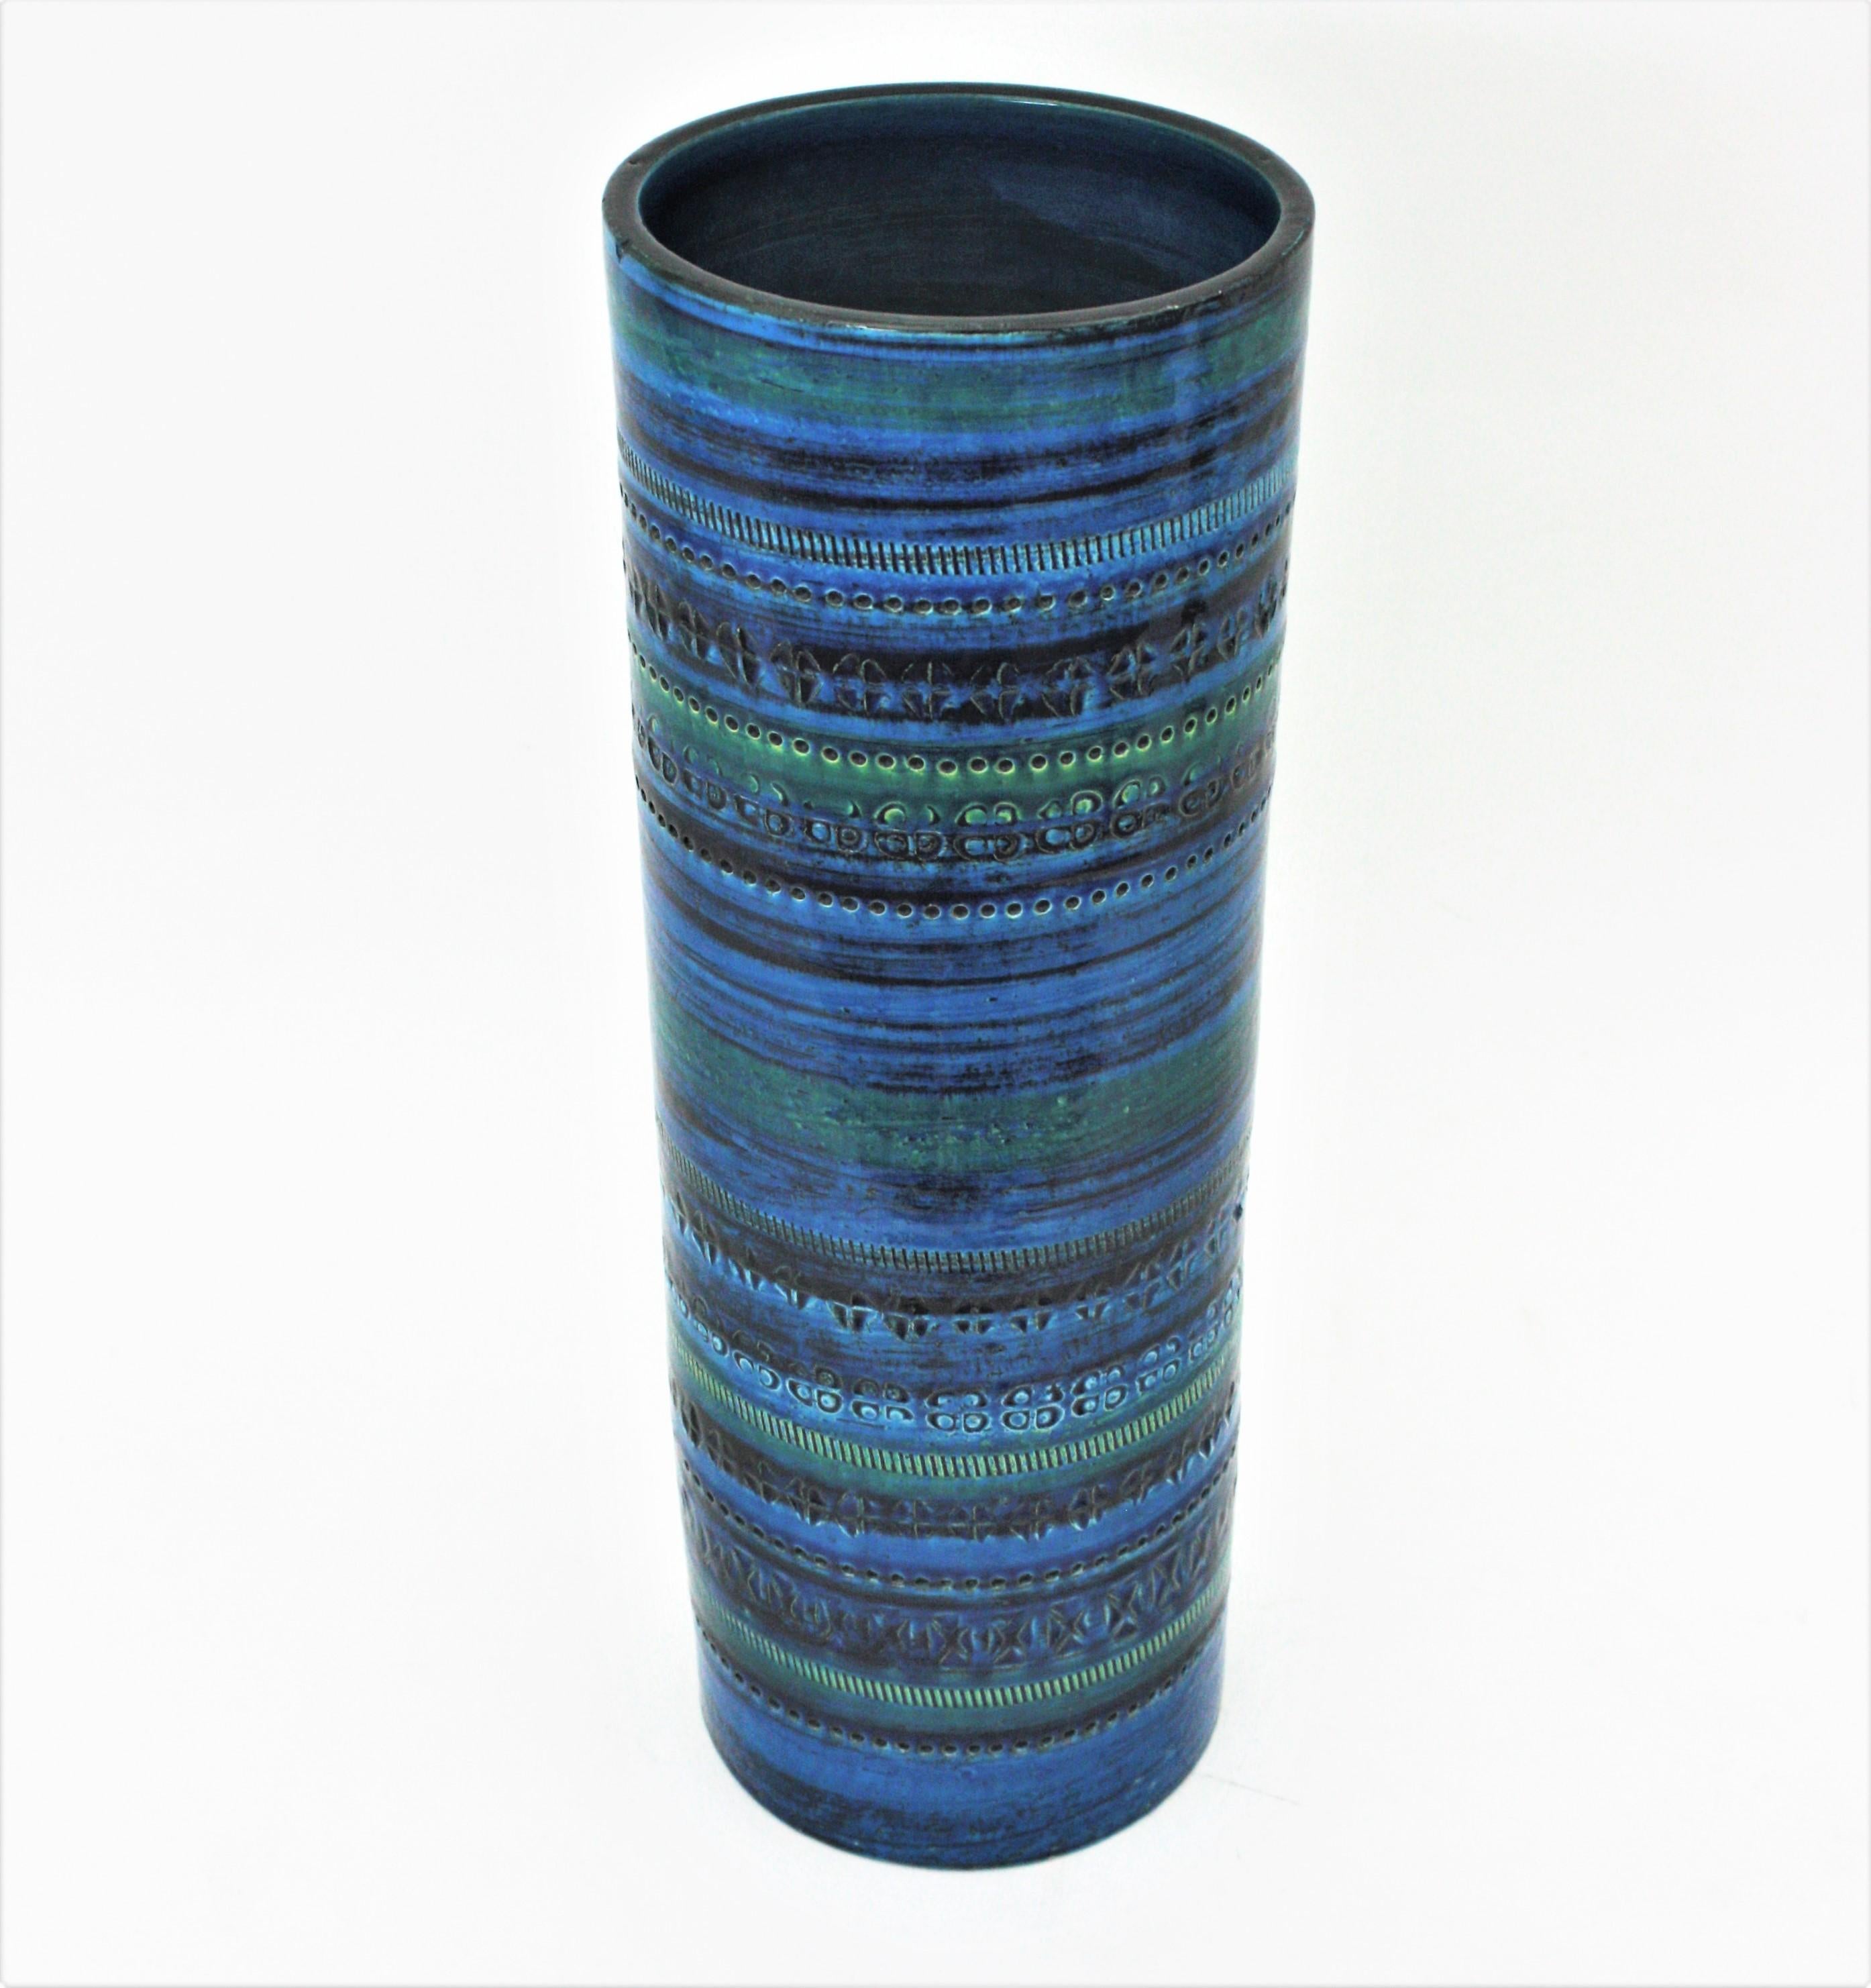 Aldo Londi Bitossi Rimini Blue Glazed Ceramic XL Vase, Italy, 1960s For Sale 2